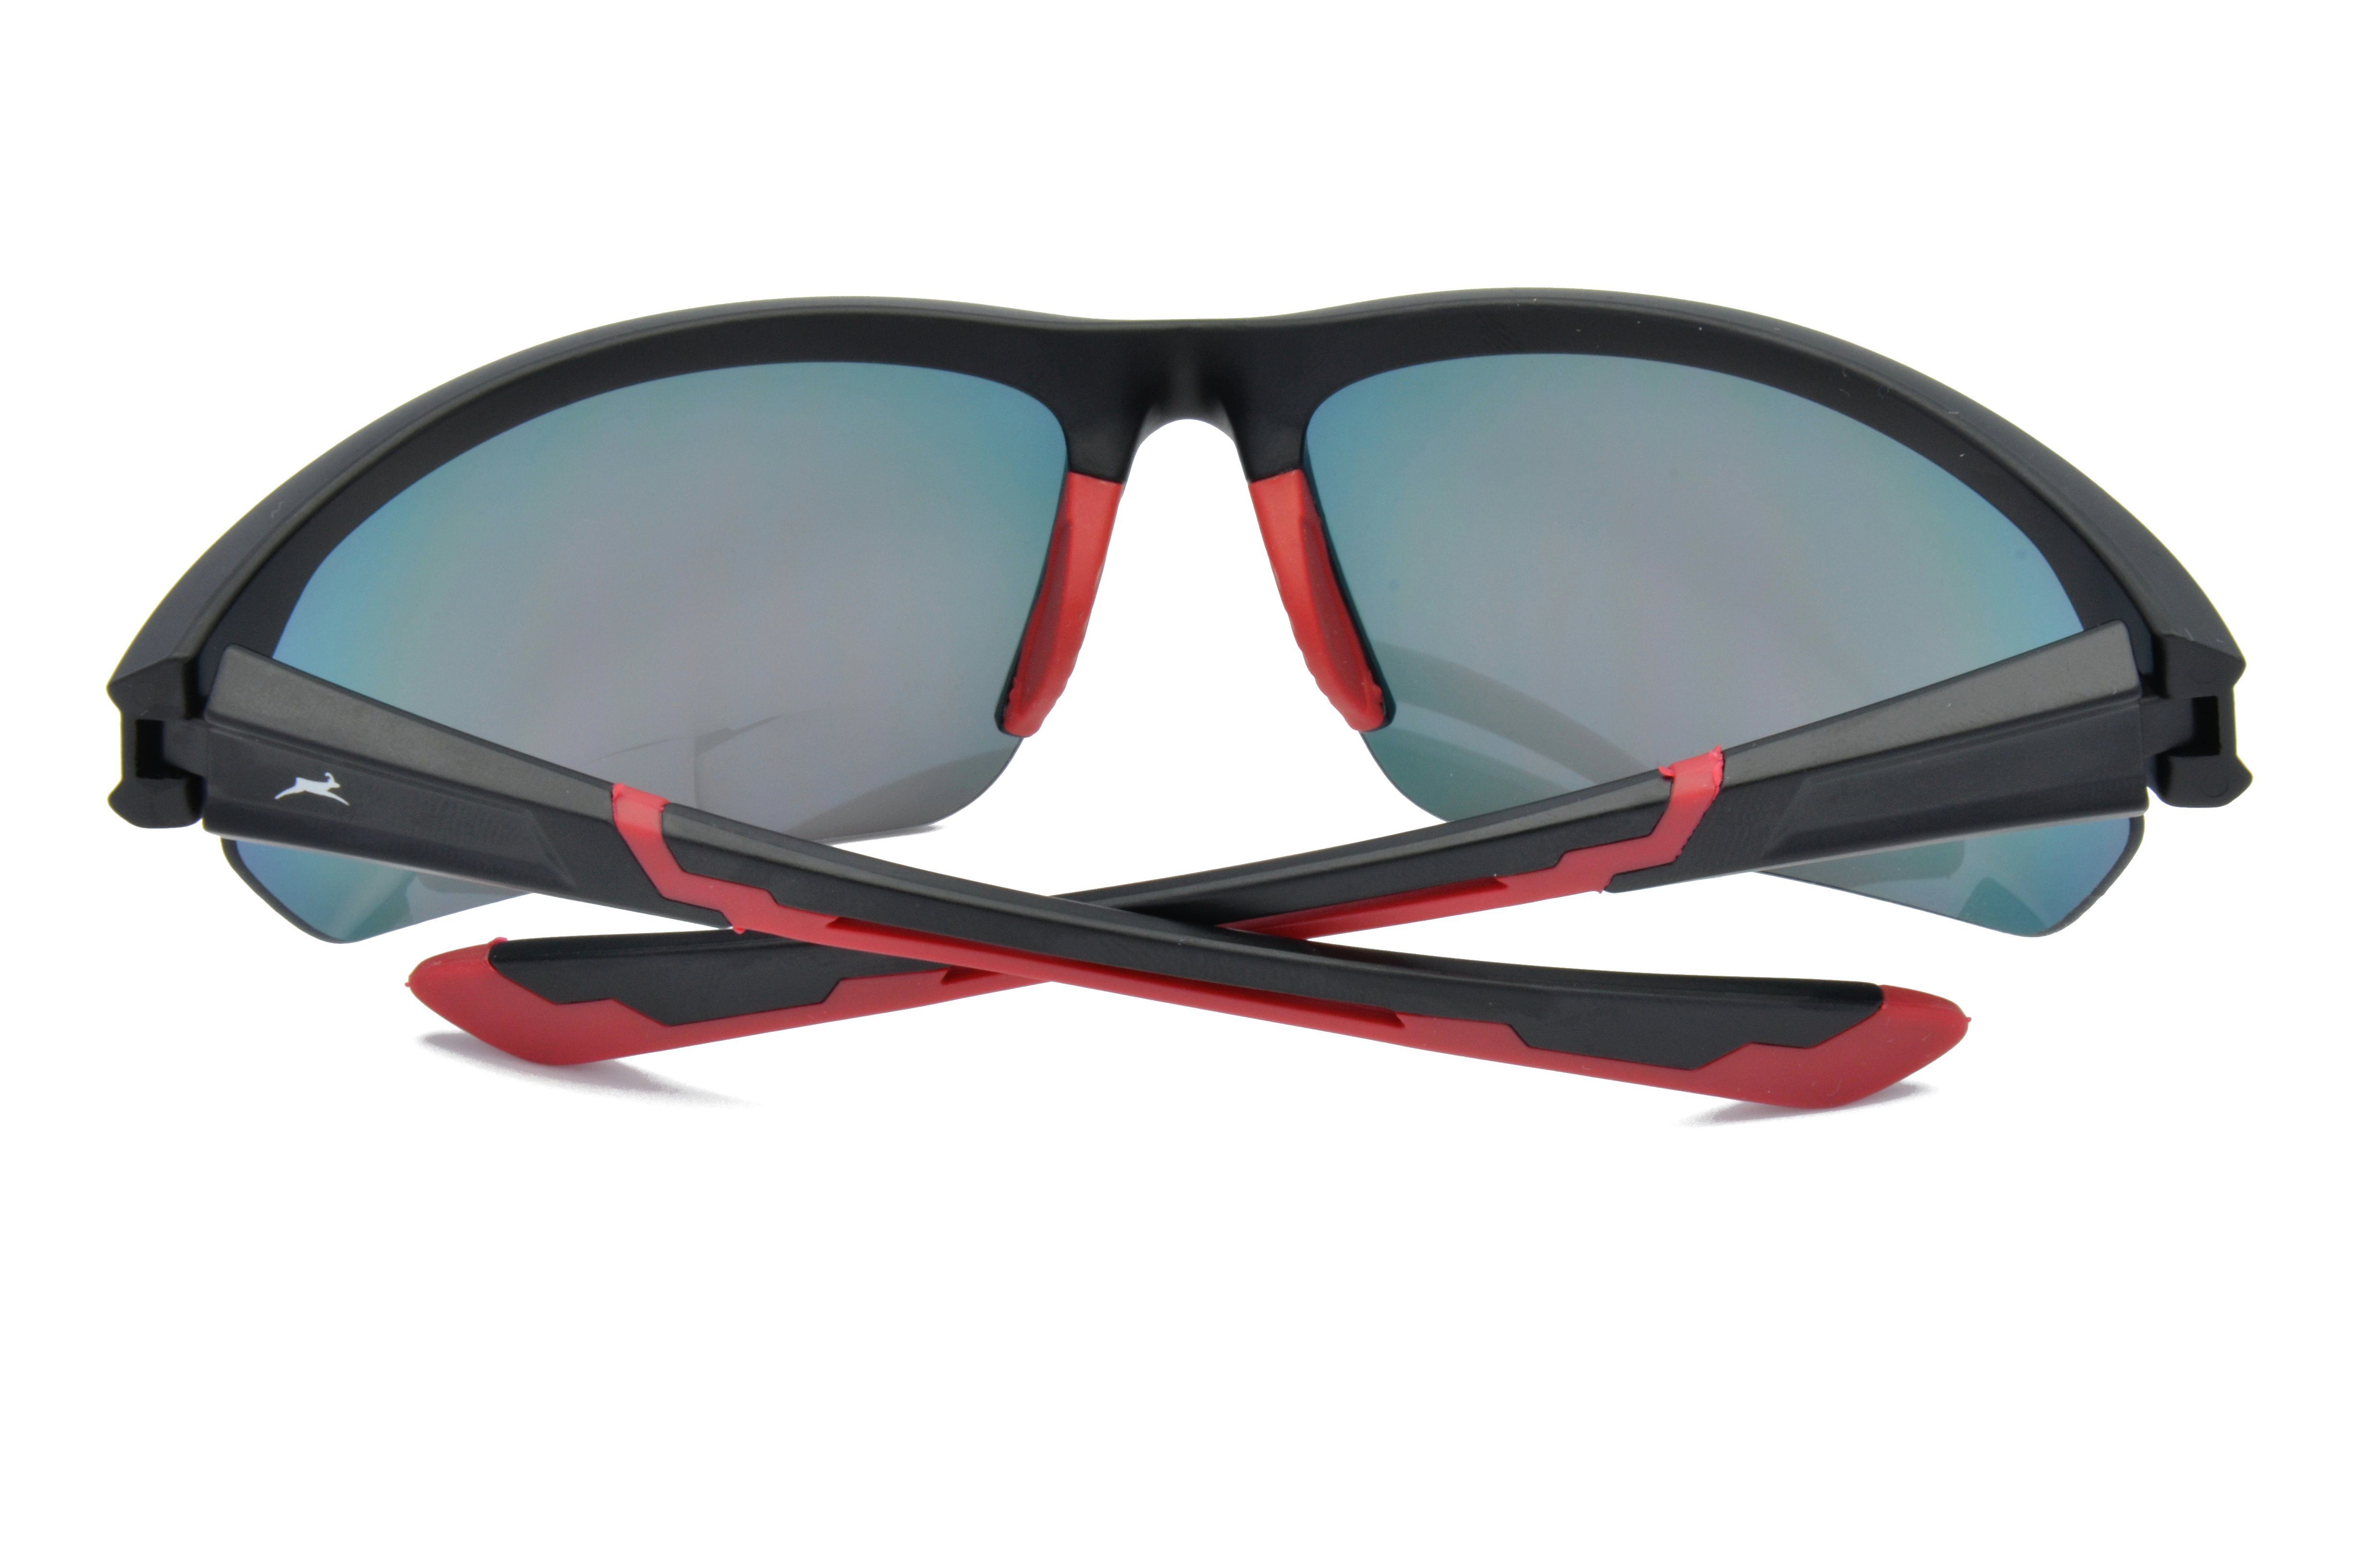 Gamswild Sportbrille Skibrille Unisex, Herren Damen violett, rot-orange, Fahrradbrille WS6028 blau, Sonnenbrille Halbrahmenbrille